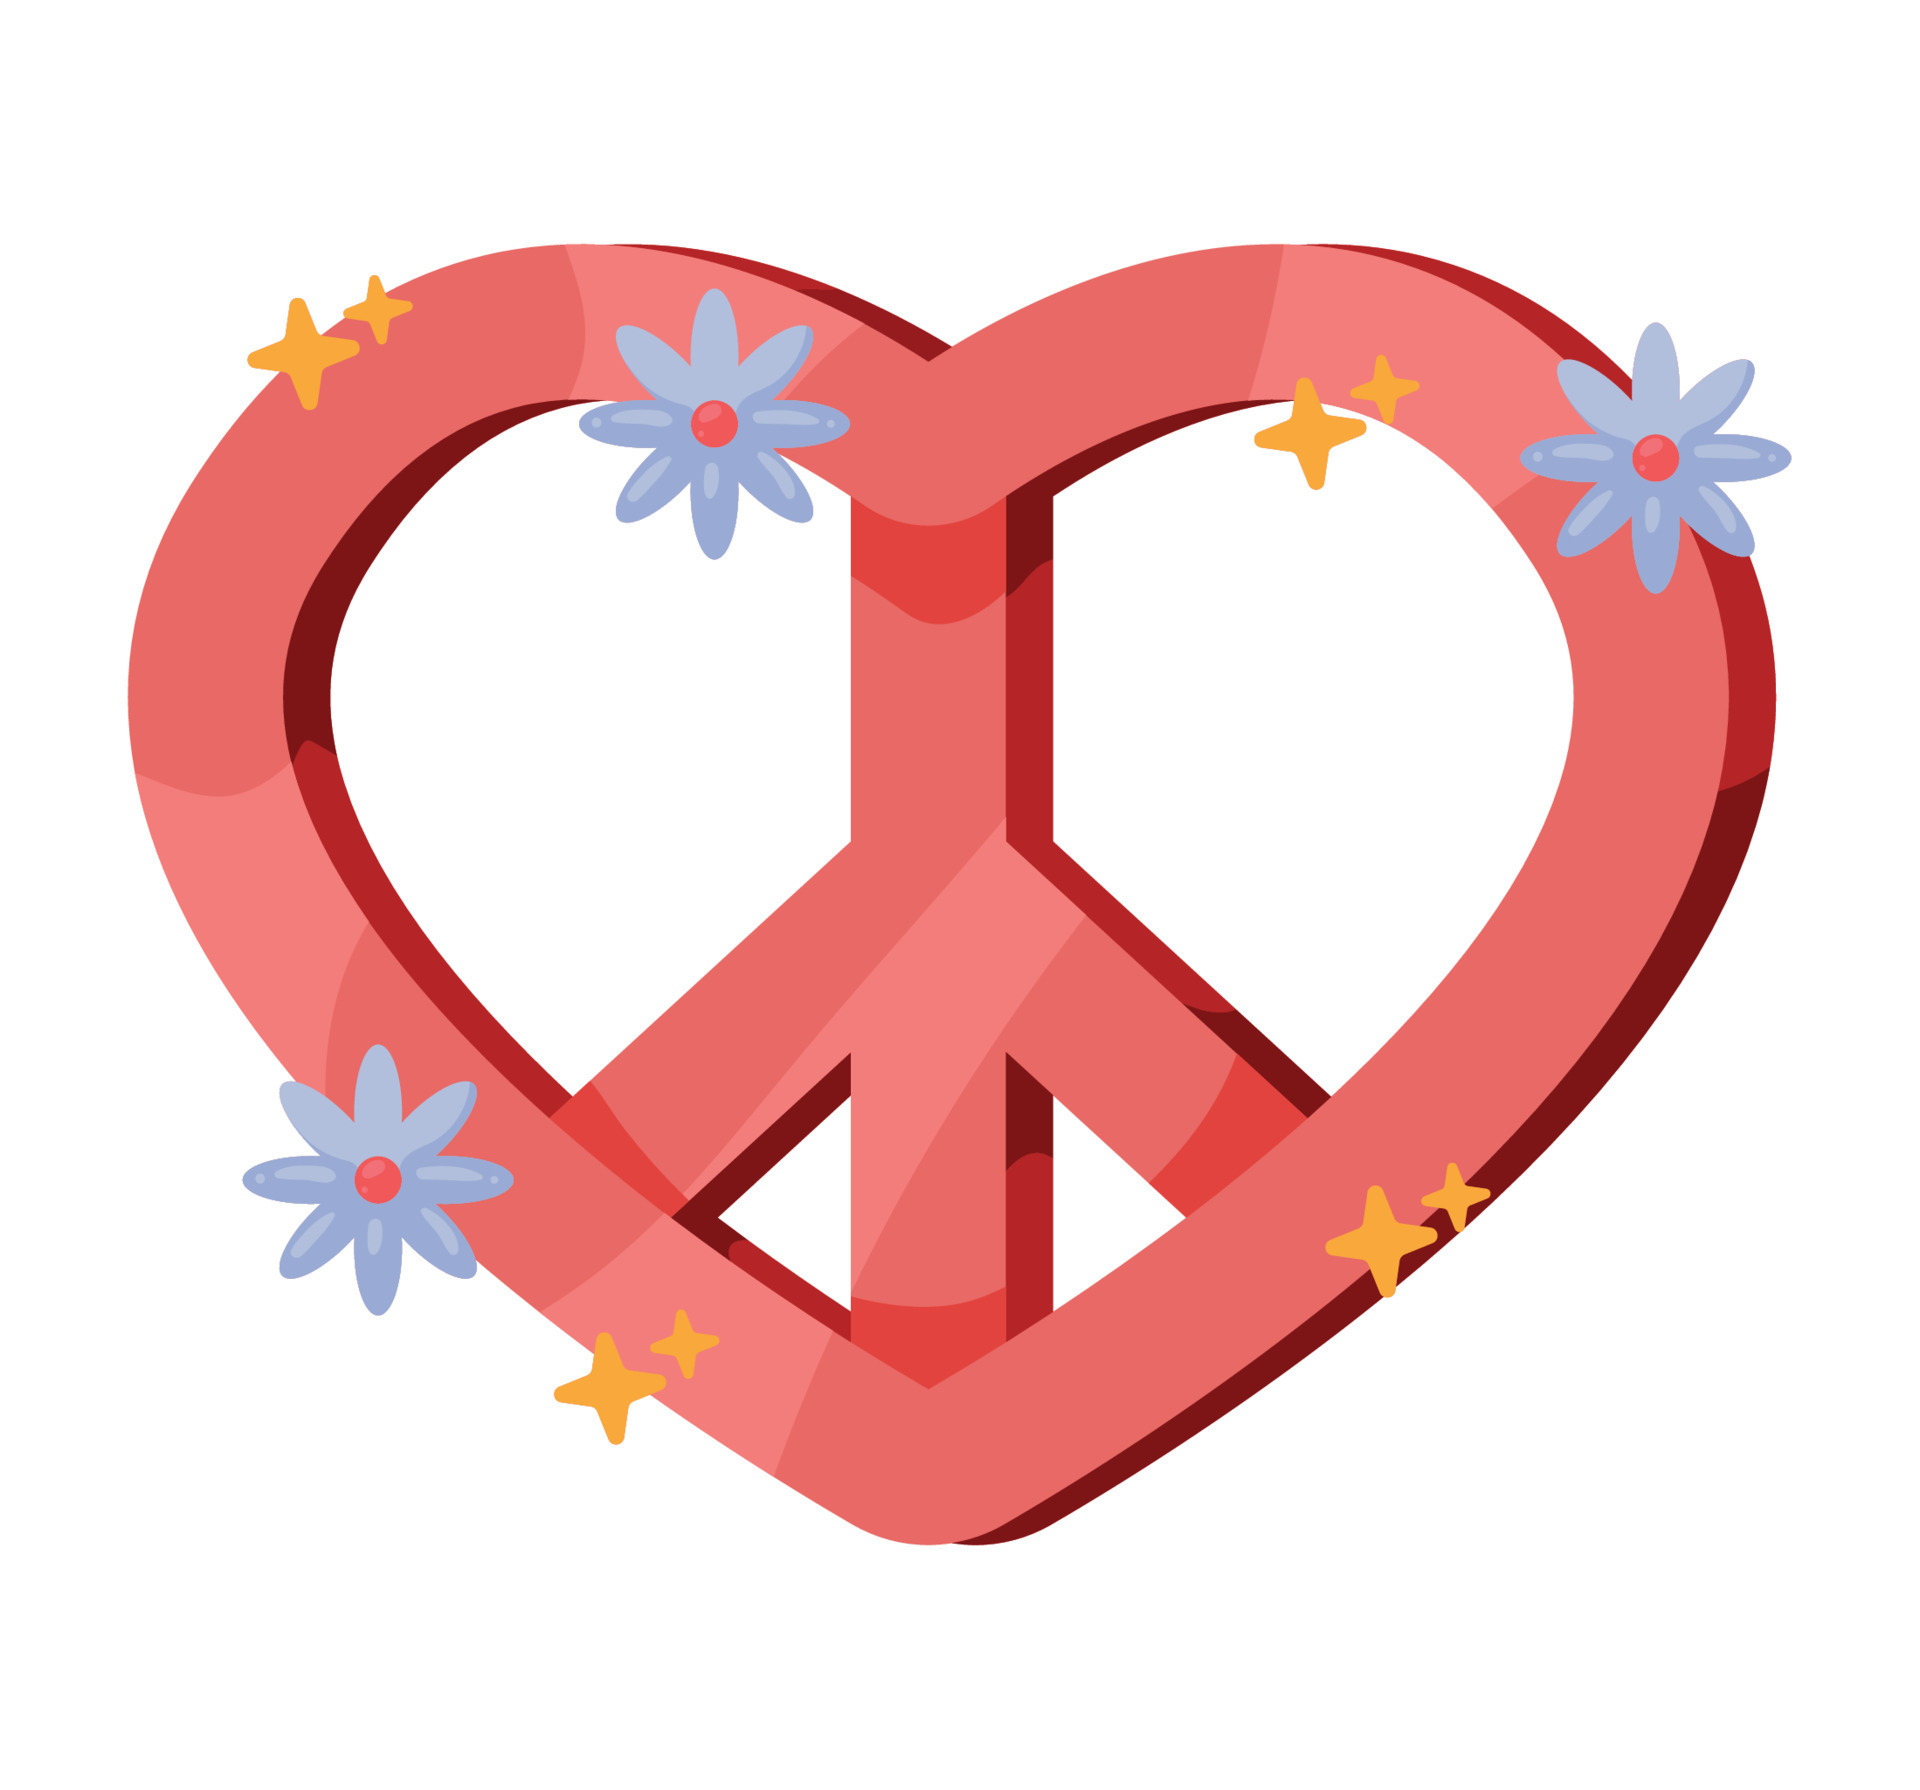 símbolo de paz y amor del corazón 11233170 Vector en Vecteezy